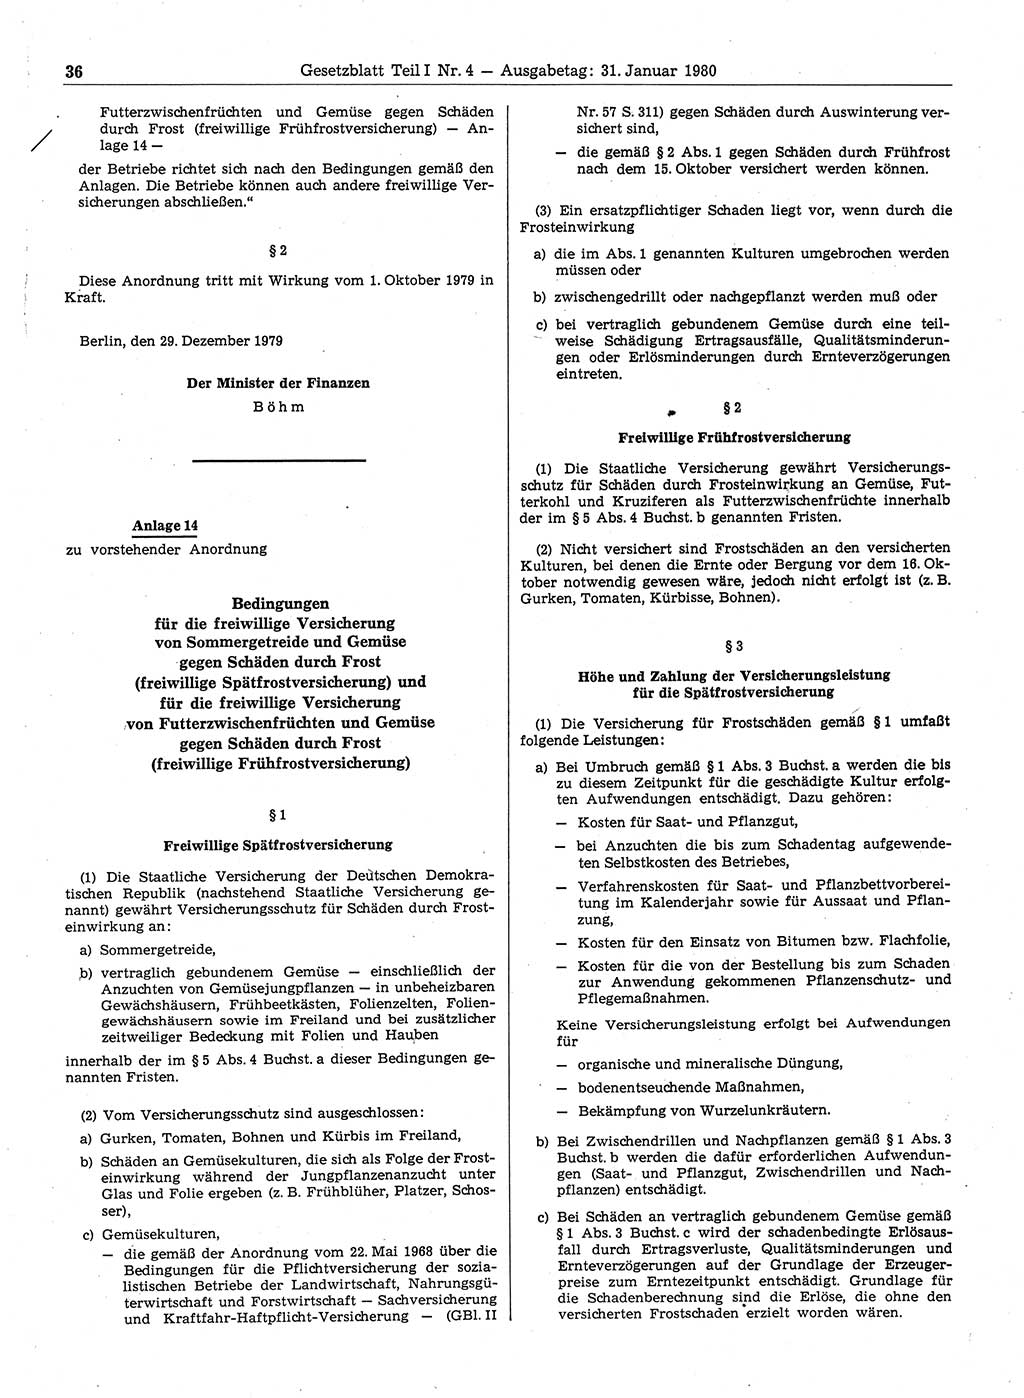 Gesetzblatt (GBl.) der Deutschen Demokratischen Republik (DDR) Teil Ⅰ 1980, Seite 36 (GBl. DDR Ⅰ 1980, S. 36)